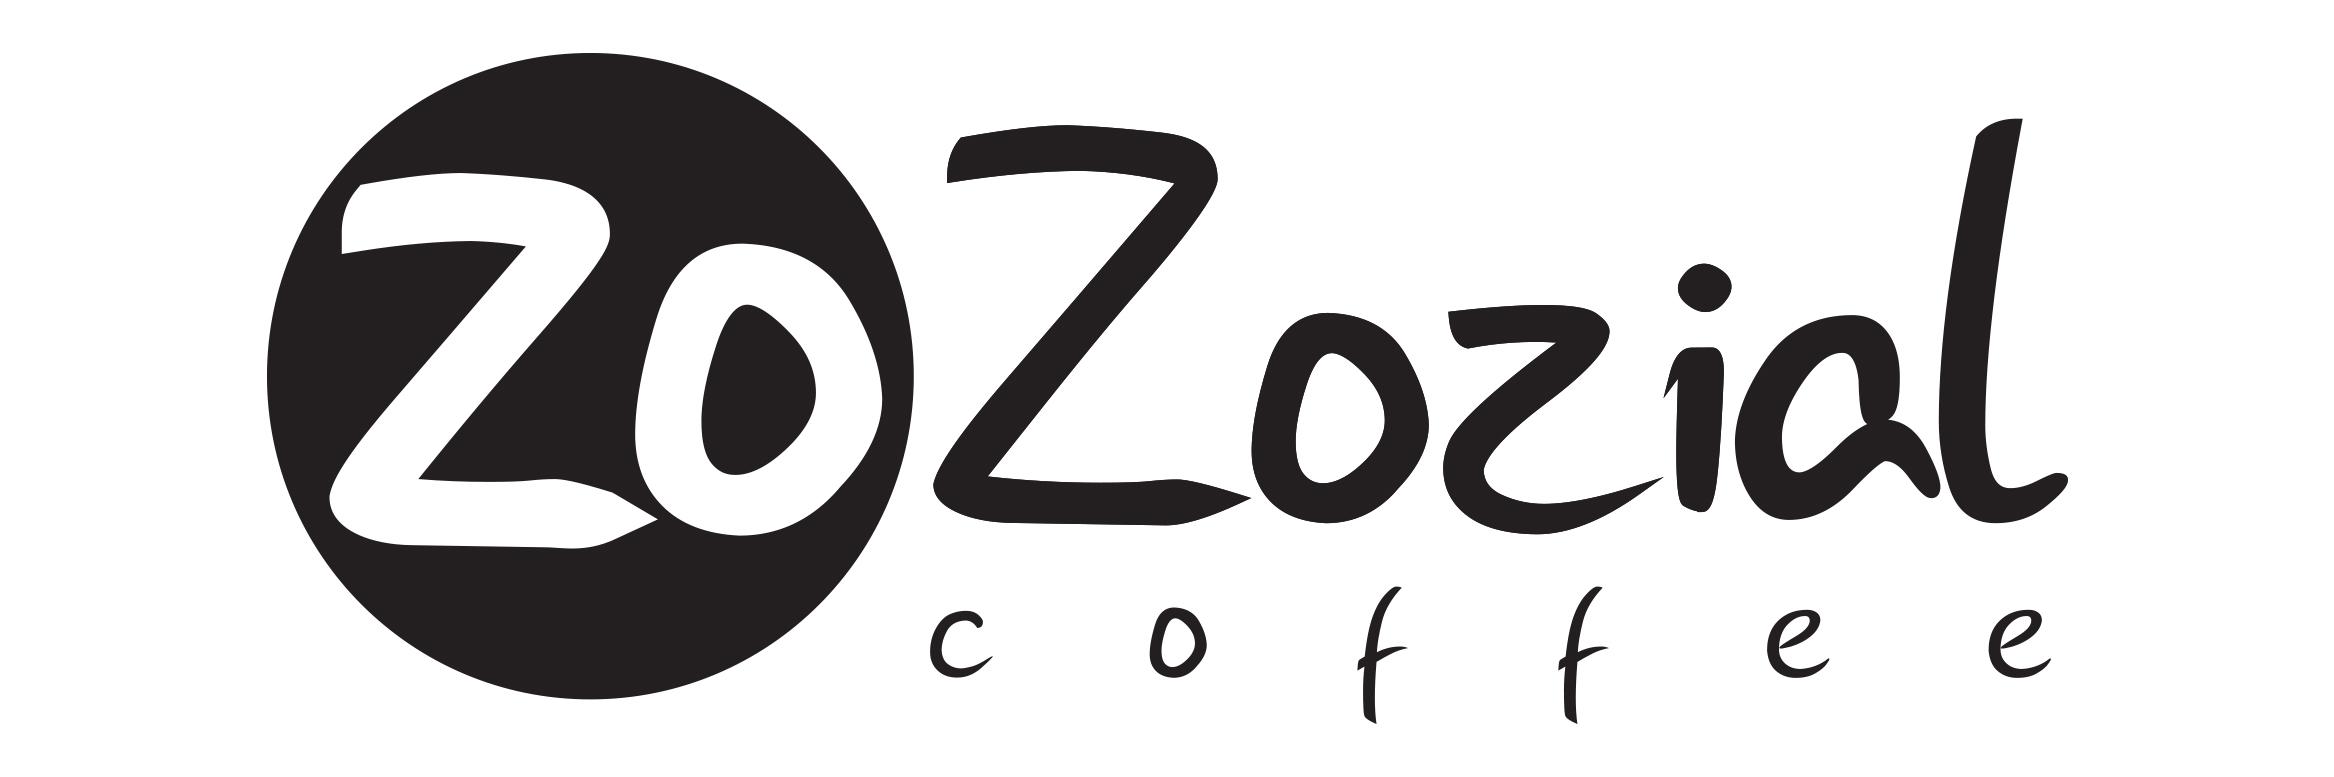 ZoZozial Coffee